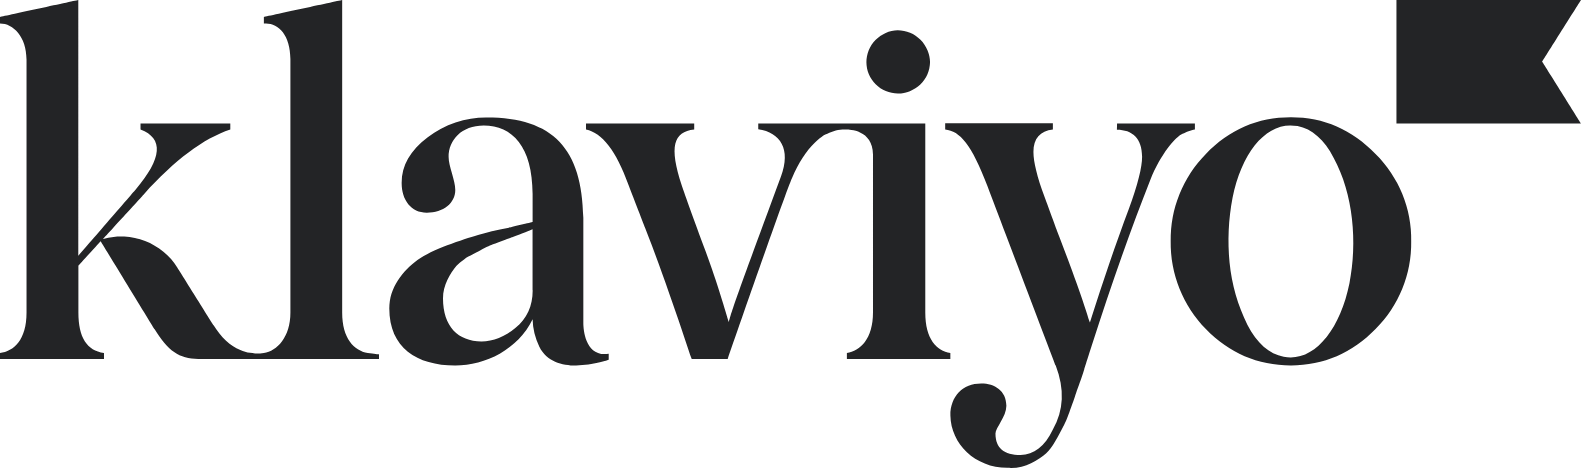 Klaviyo logo large (transparent PNG)